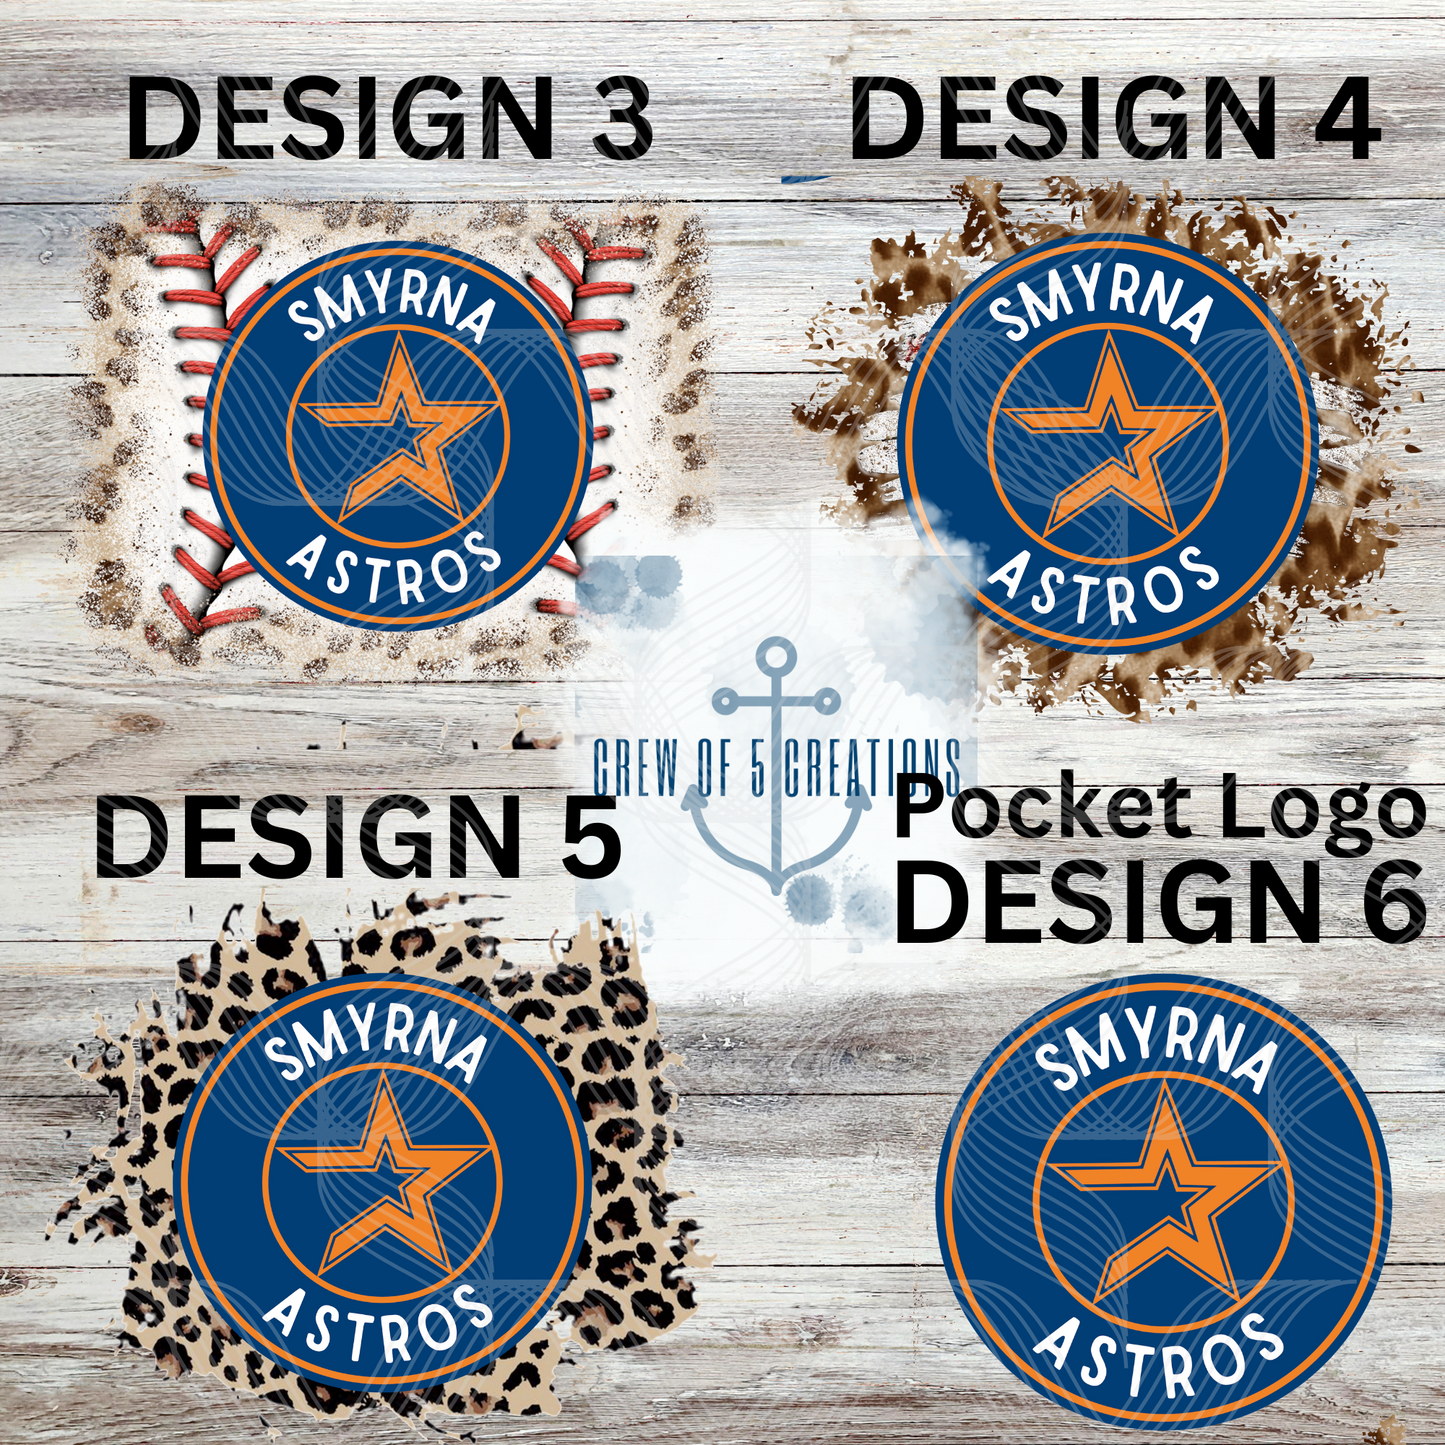 Smyrna Astros (6 Design Options)